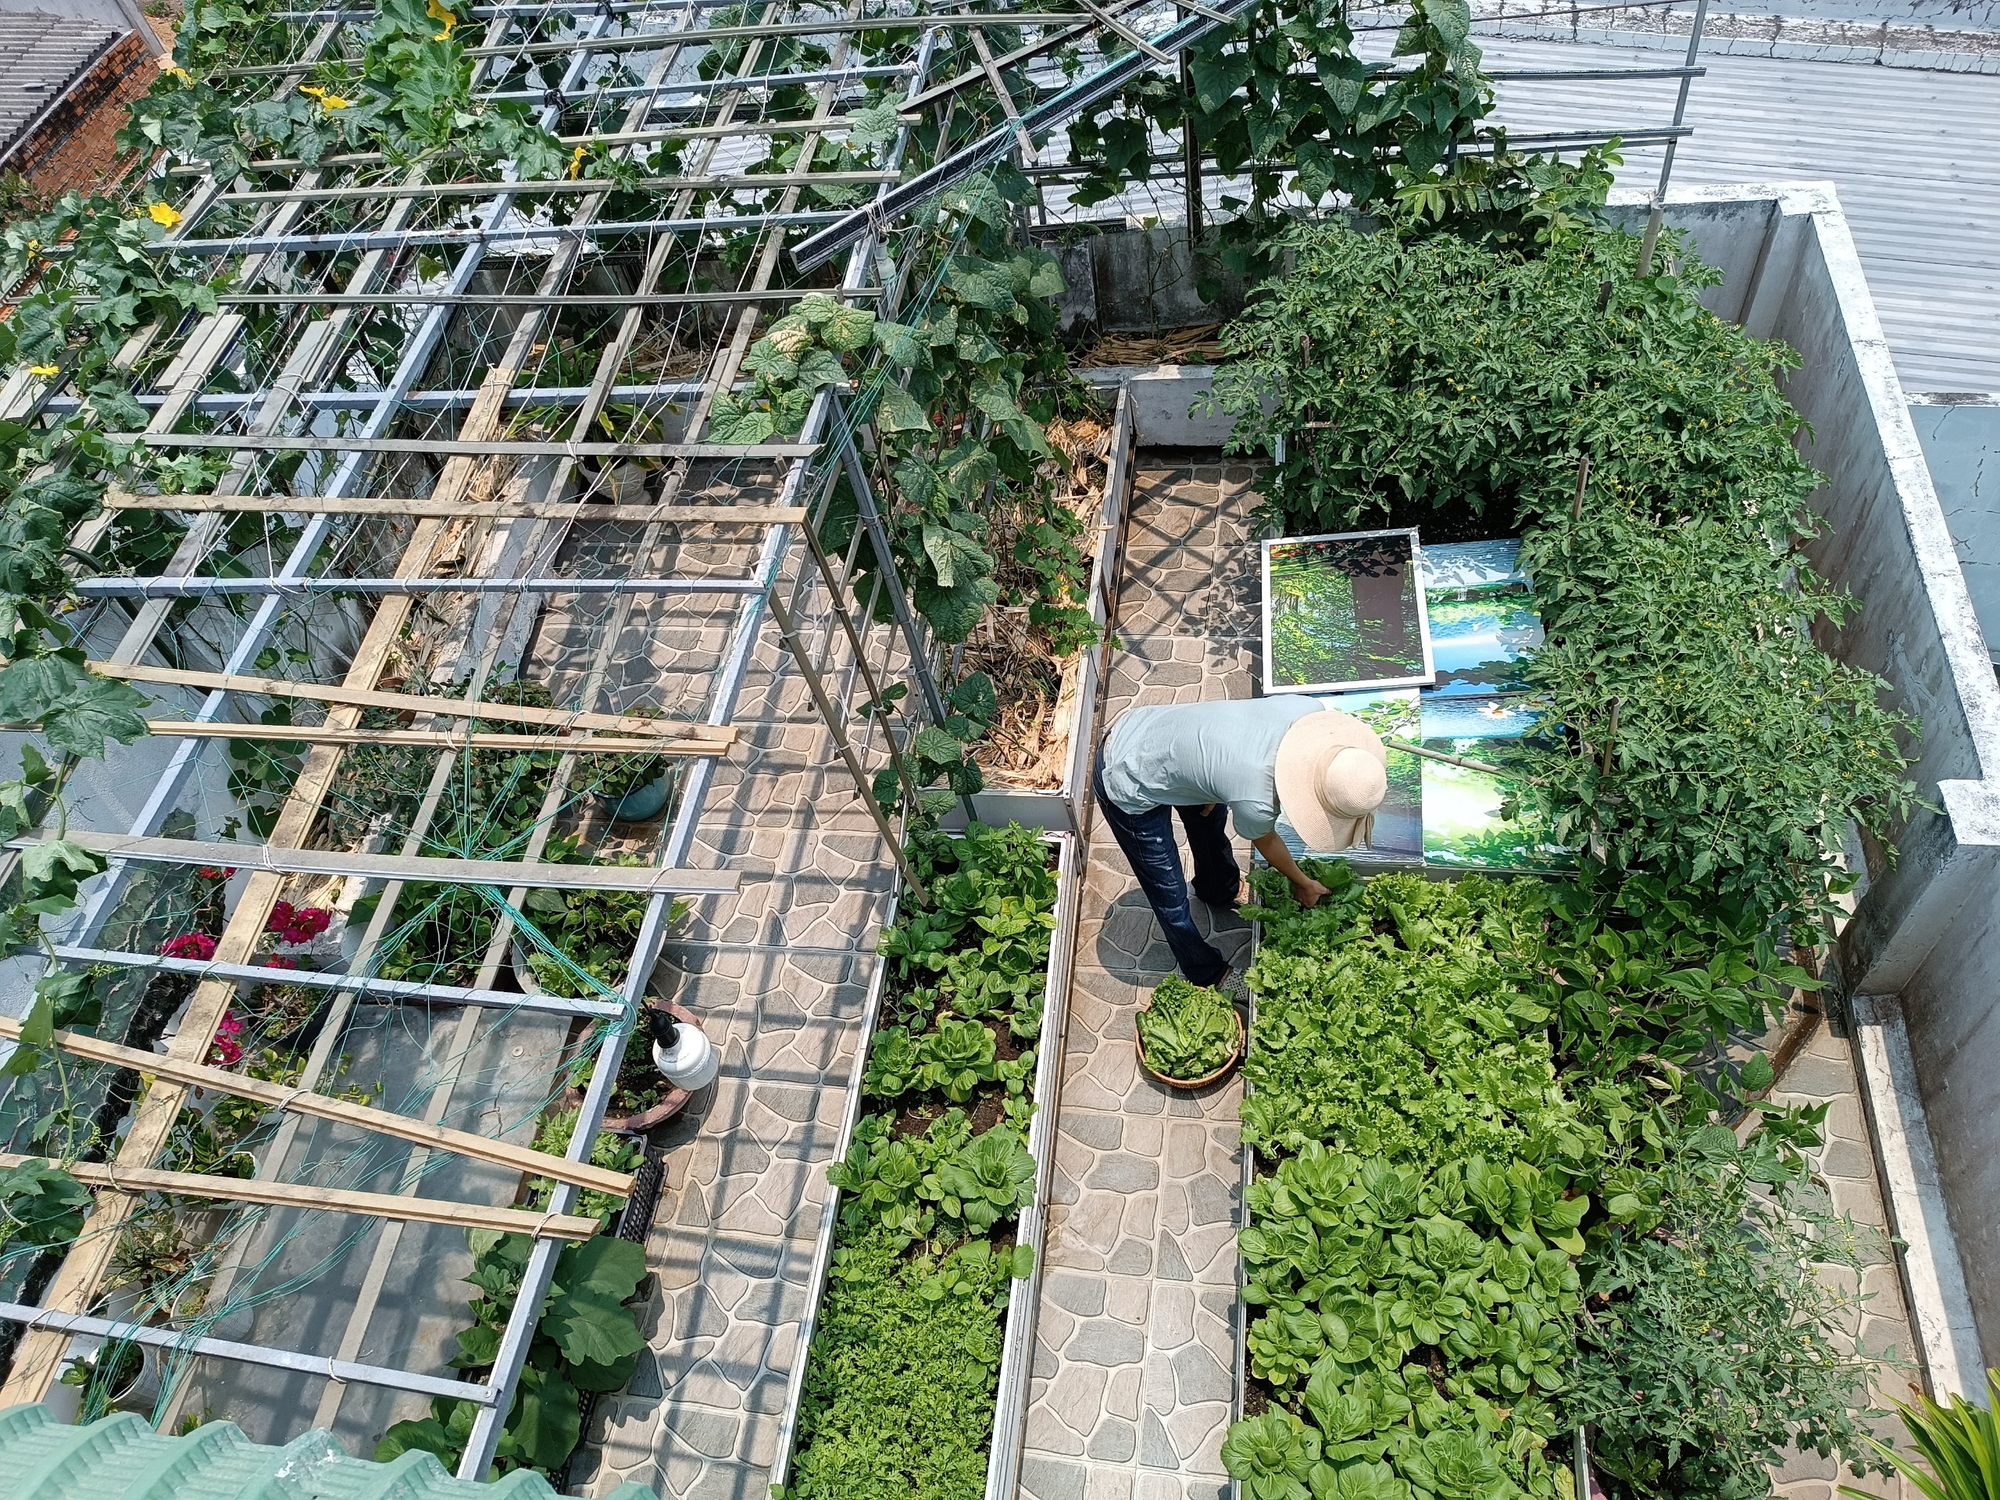 Khu vườn sân thượng 70m2 trĩu nặng rau quả từ căn nhà phố ở Bình Thuận - Ảnh 1.